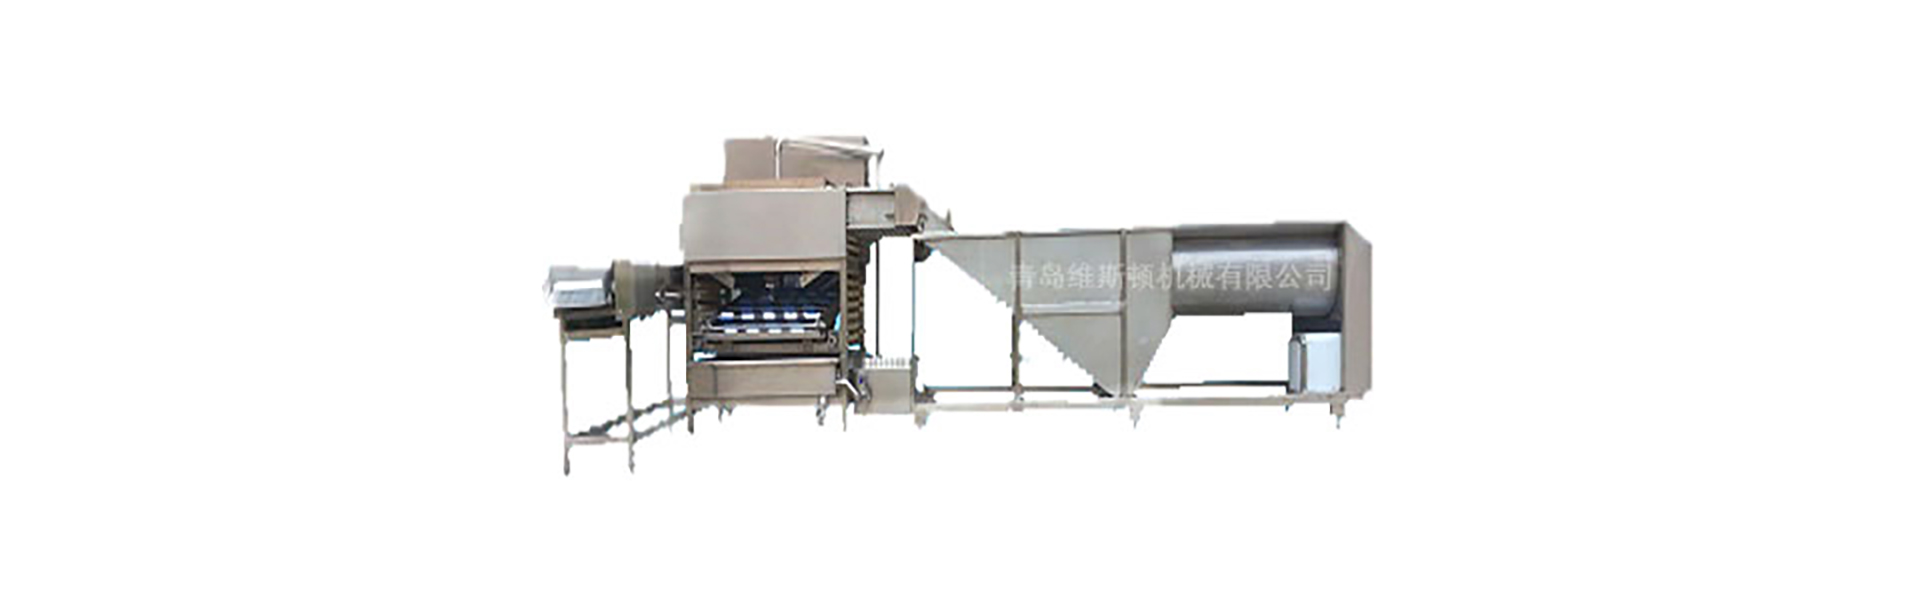 سحق آلة ، آلة غسل البيض ، البيض الصف آلة,Qingdao Wisdom Machinery Co.,Ltd